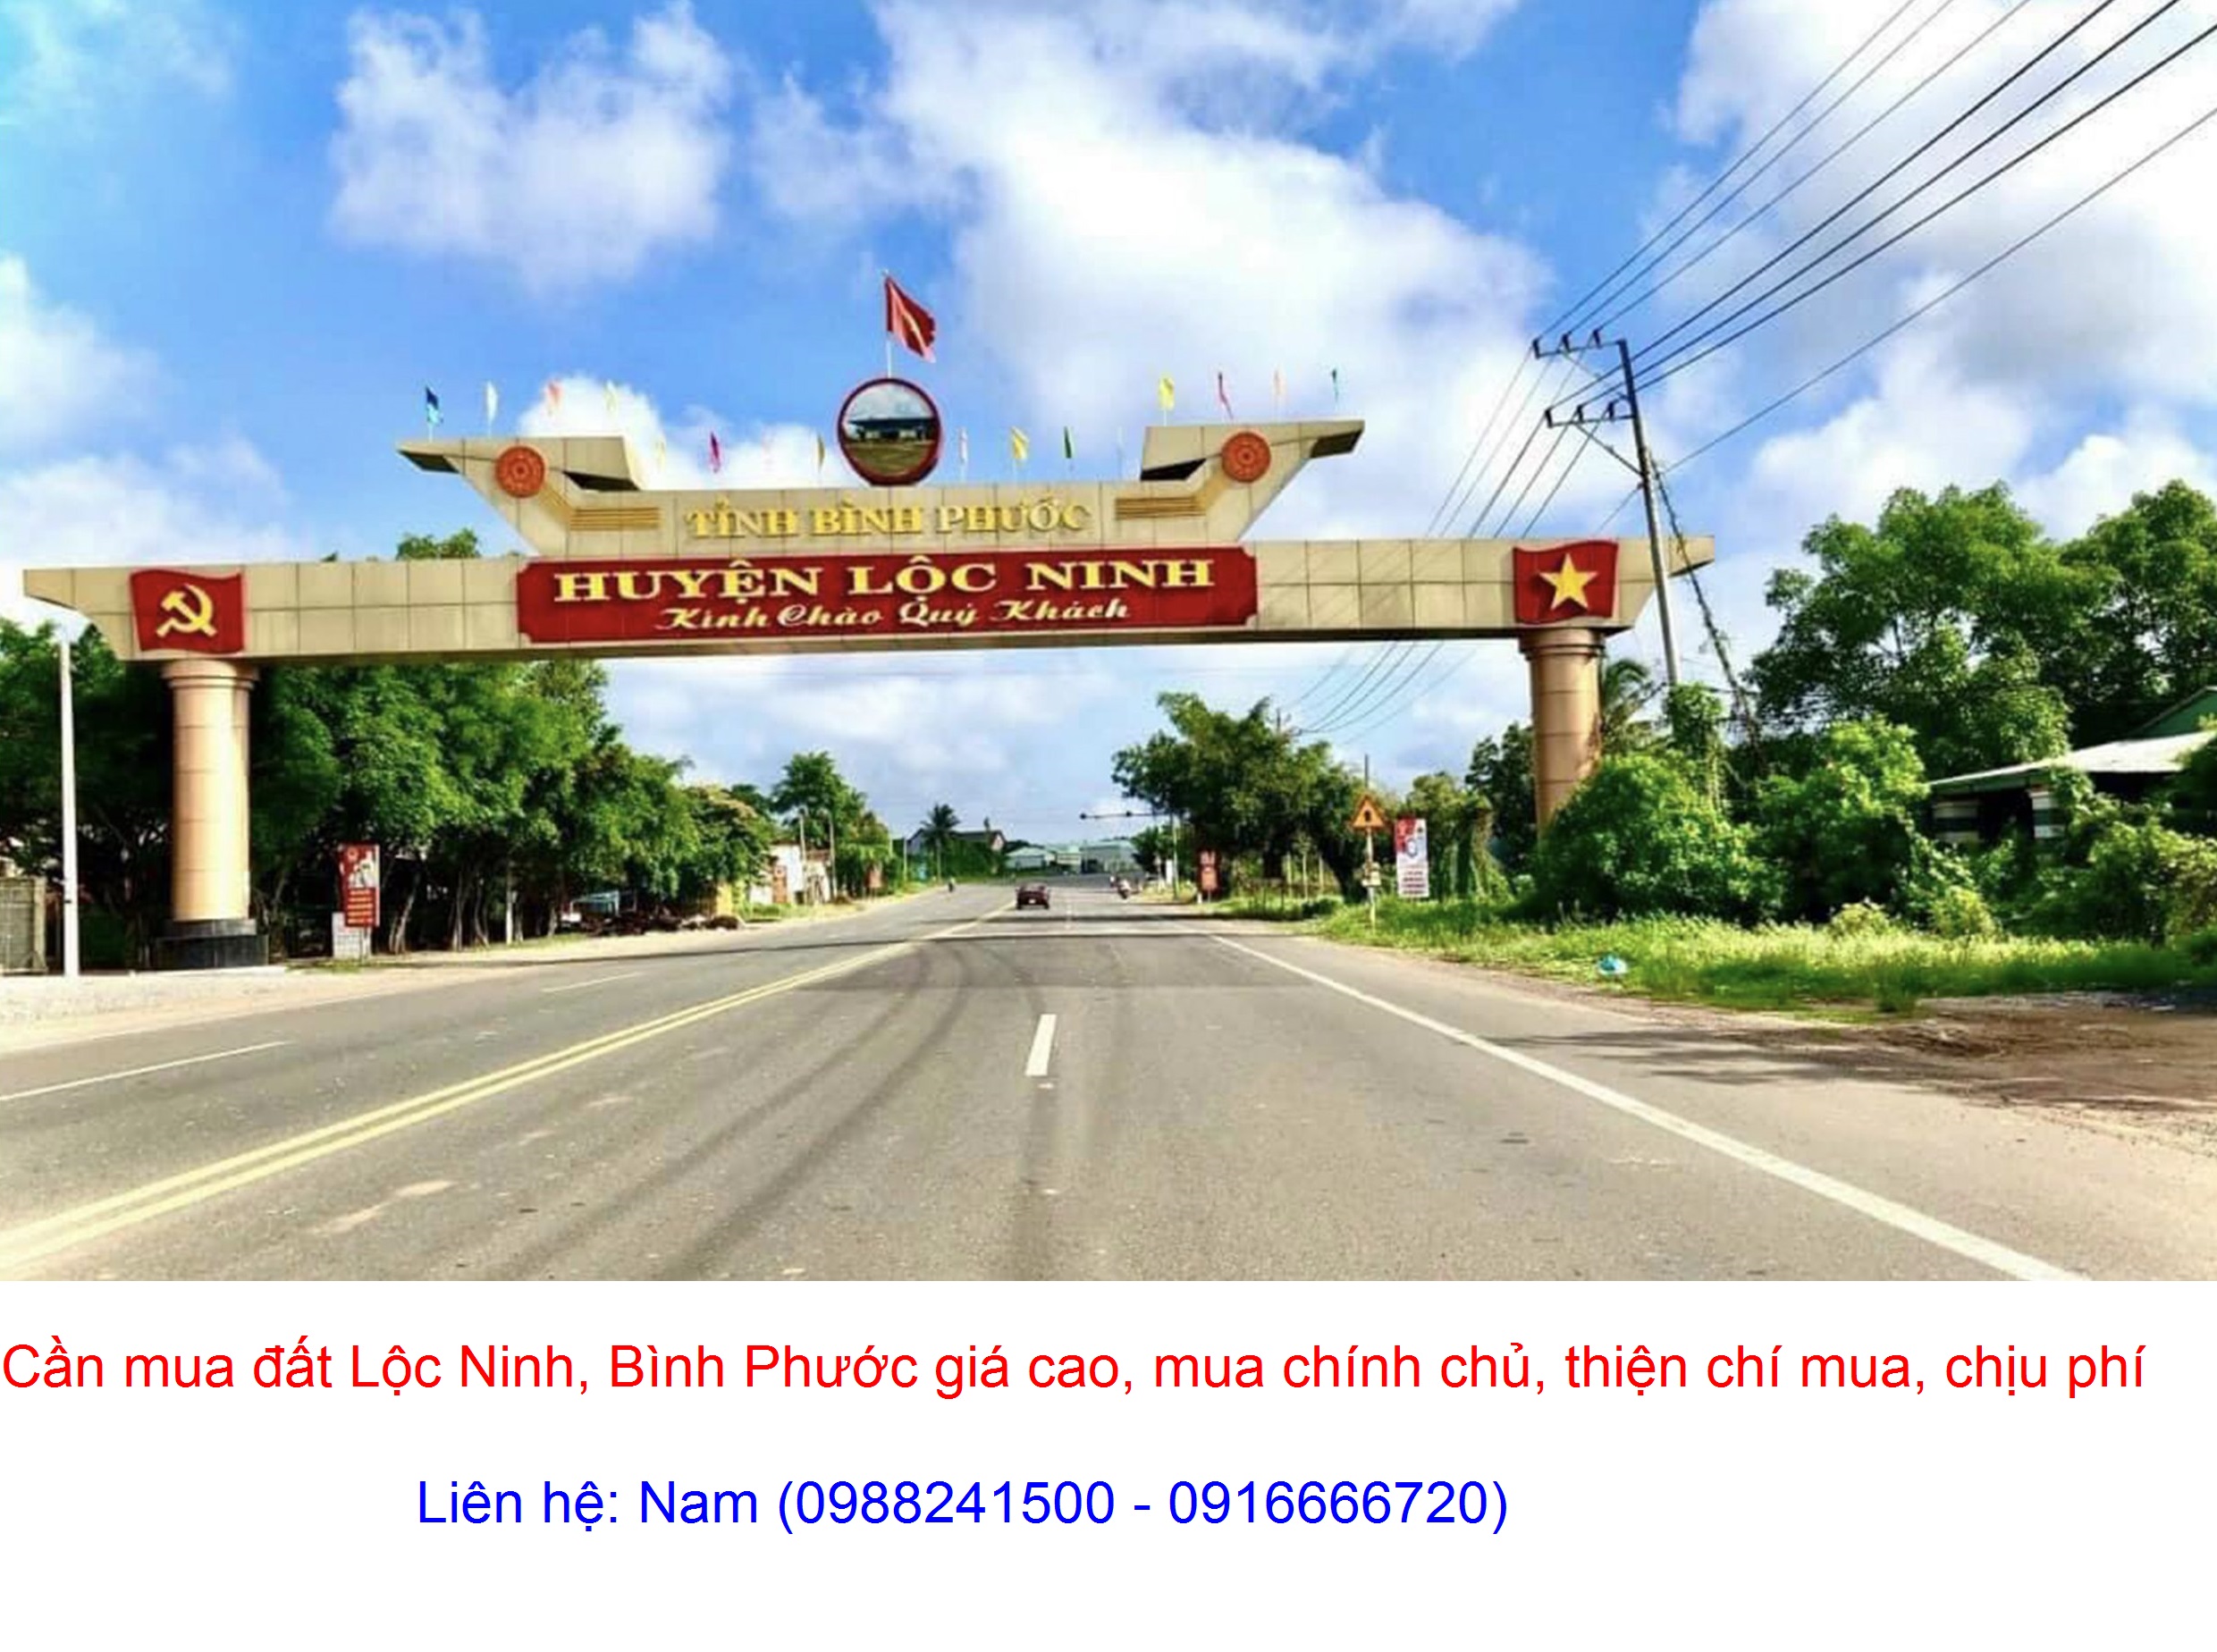 Cần Mua gấp đất Lộc Phú, Lộc Ninh giá cao, mua chính chủ, chịu phí sang tên